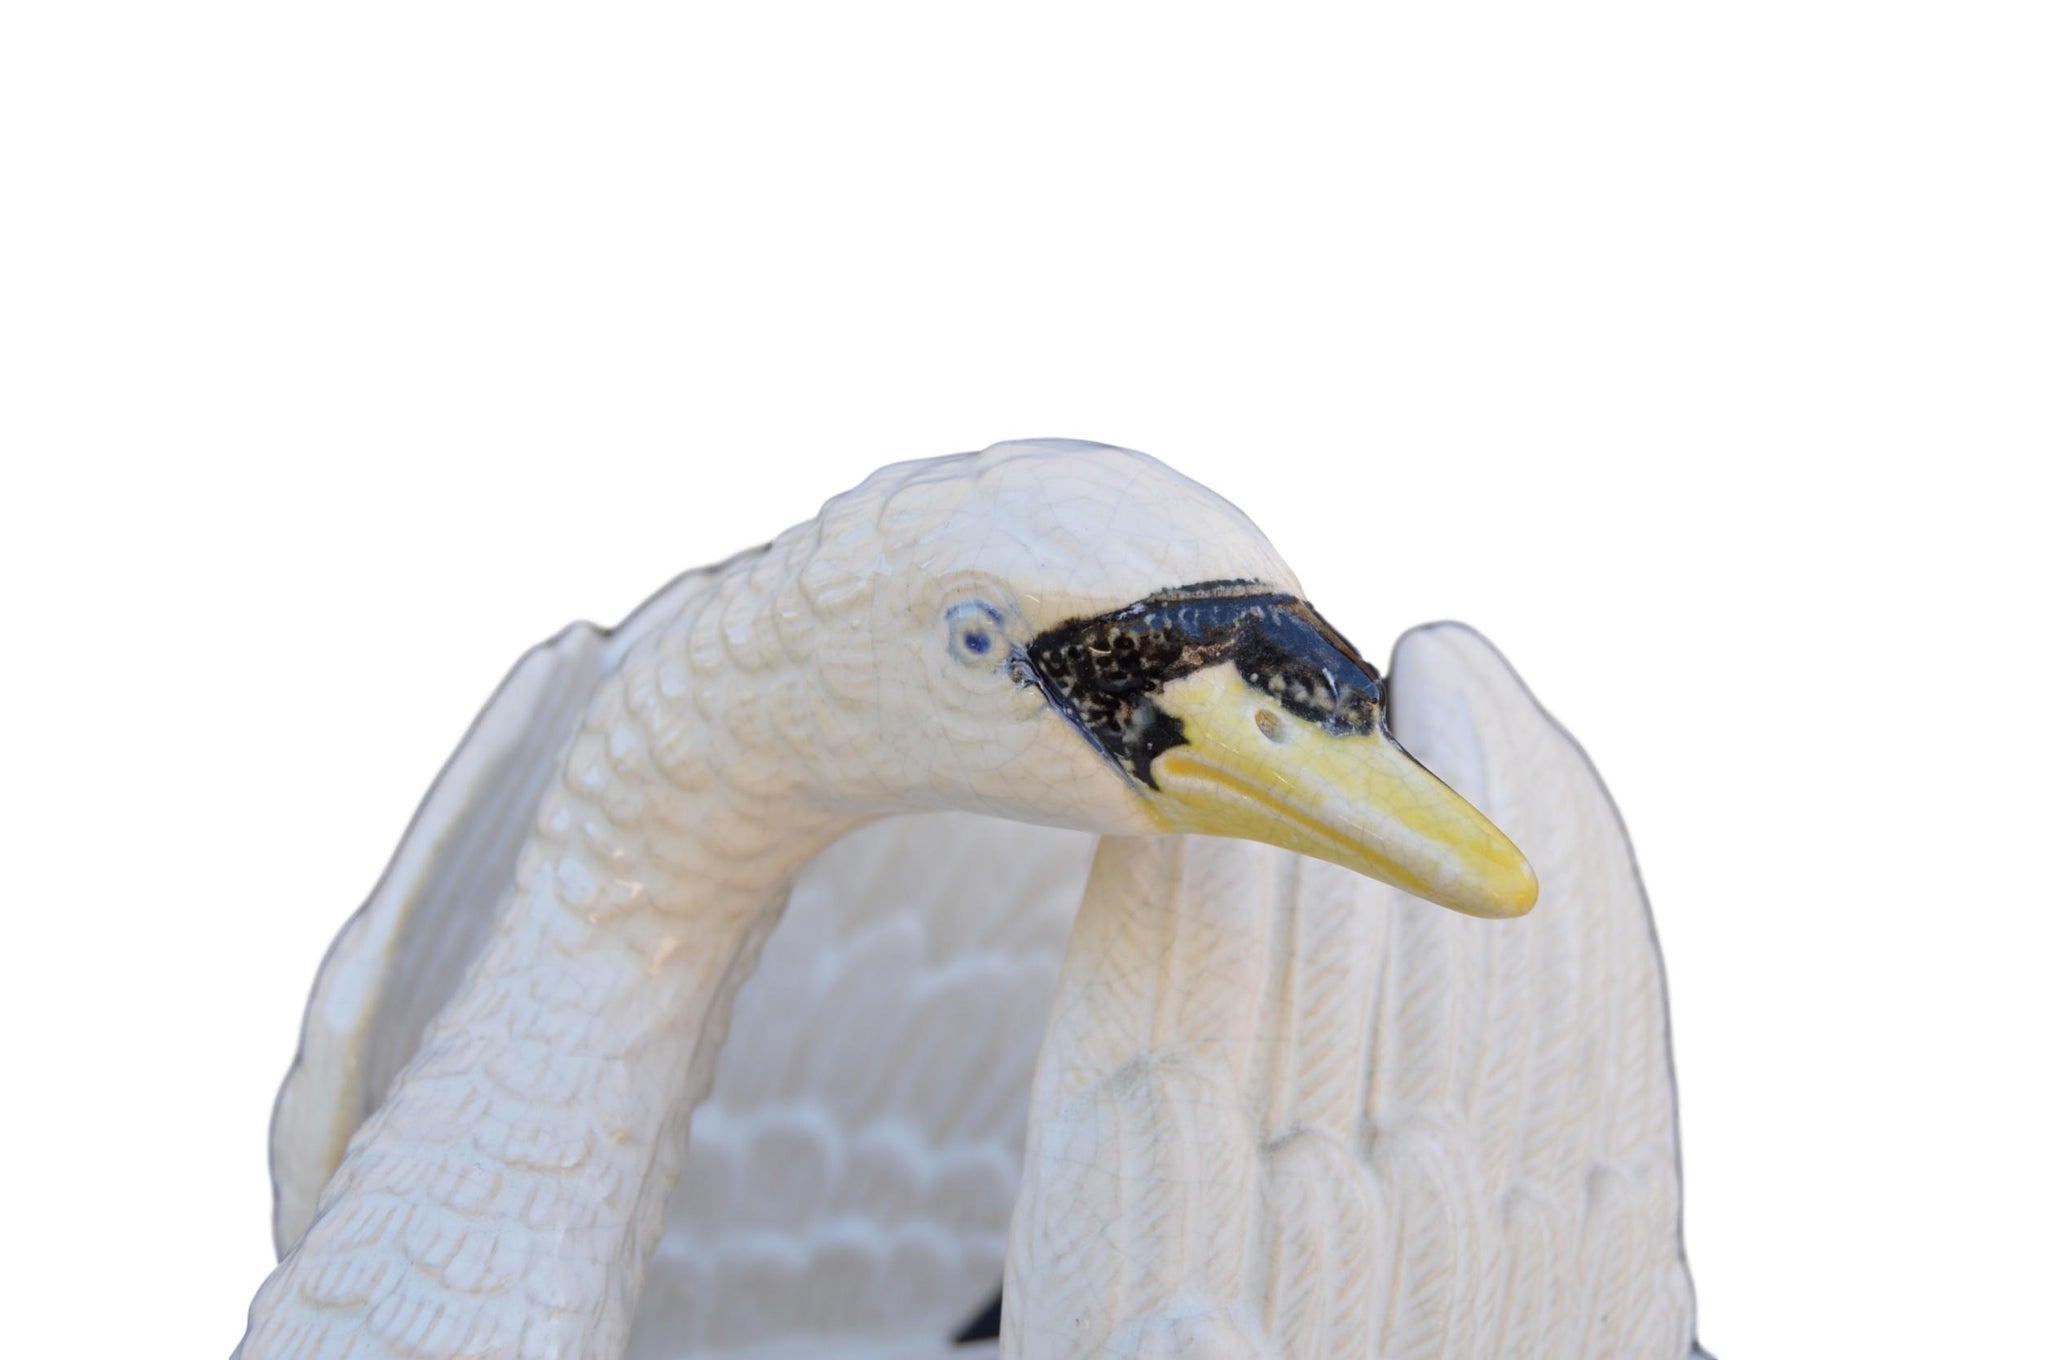 Swan Centerpiece - Charmantiques